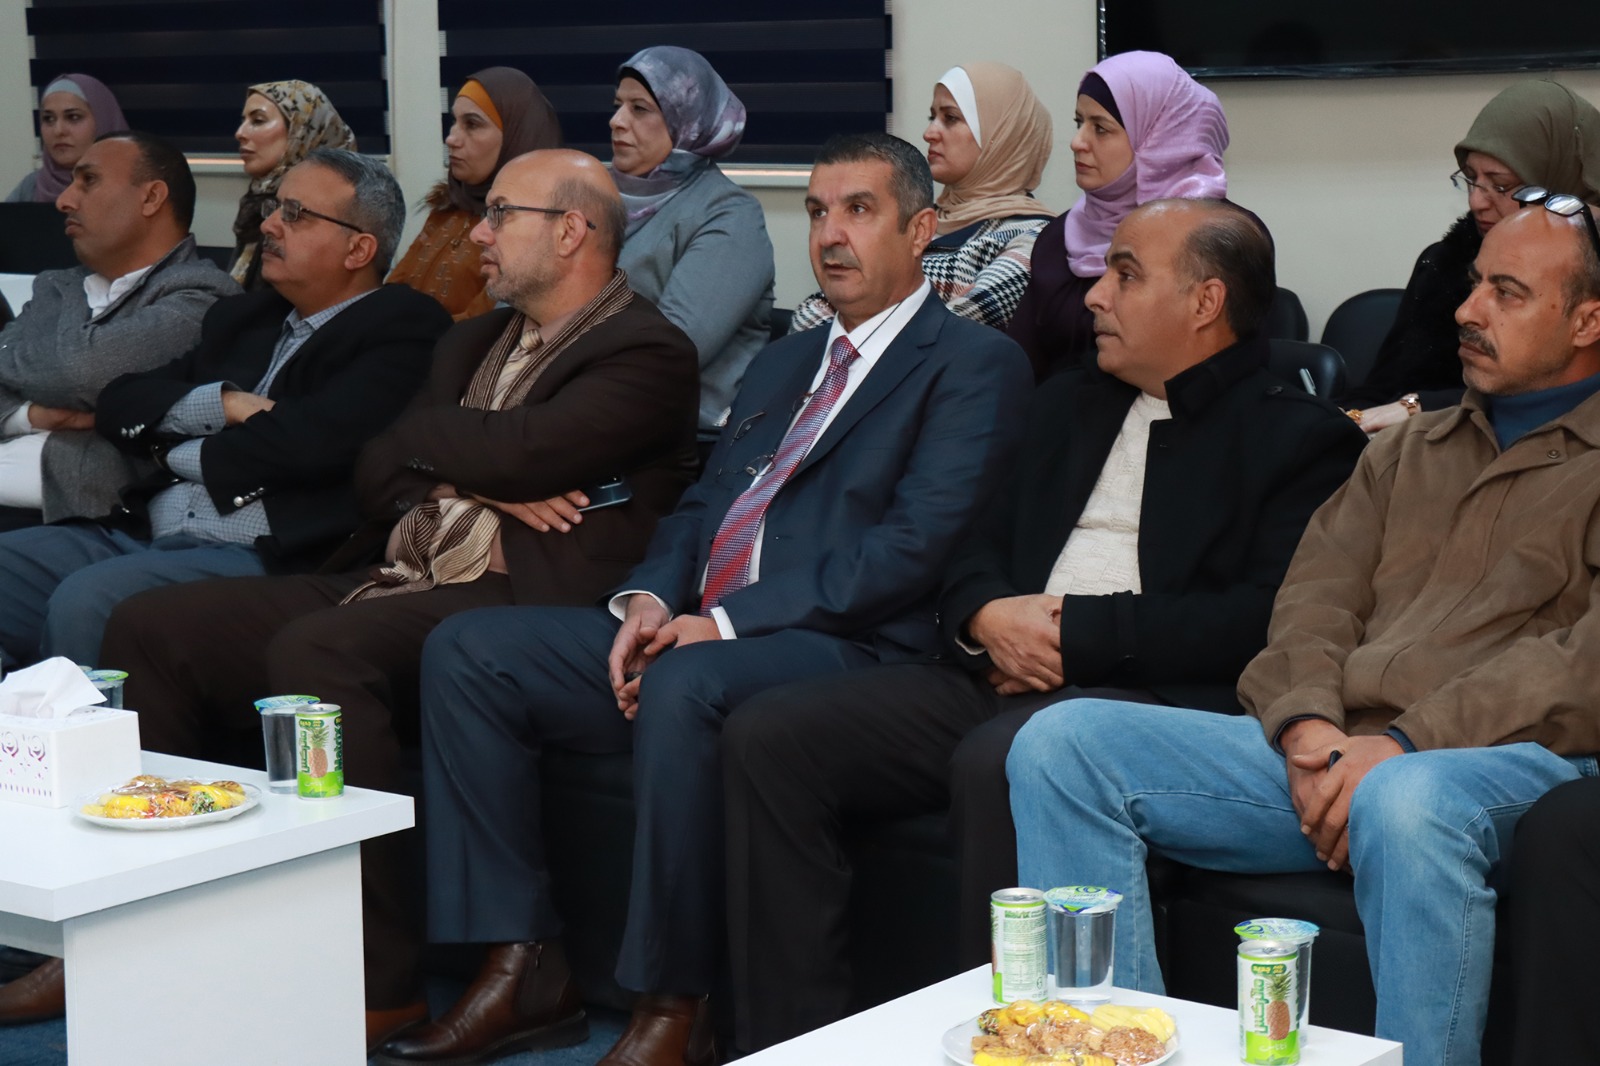 جلسة نقاشية في جامعة الحسين بن طلال لعرض نتائج دراسة  جودة الأداء التدريسي لمعلمي مديرية التربية والتعليم لمنطقة معان . 